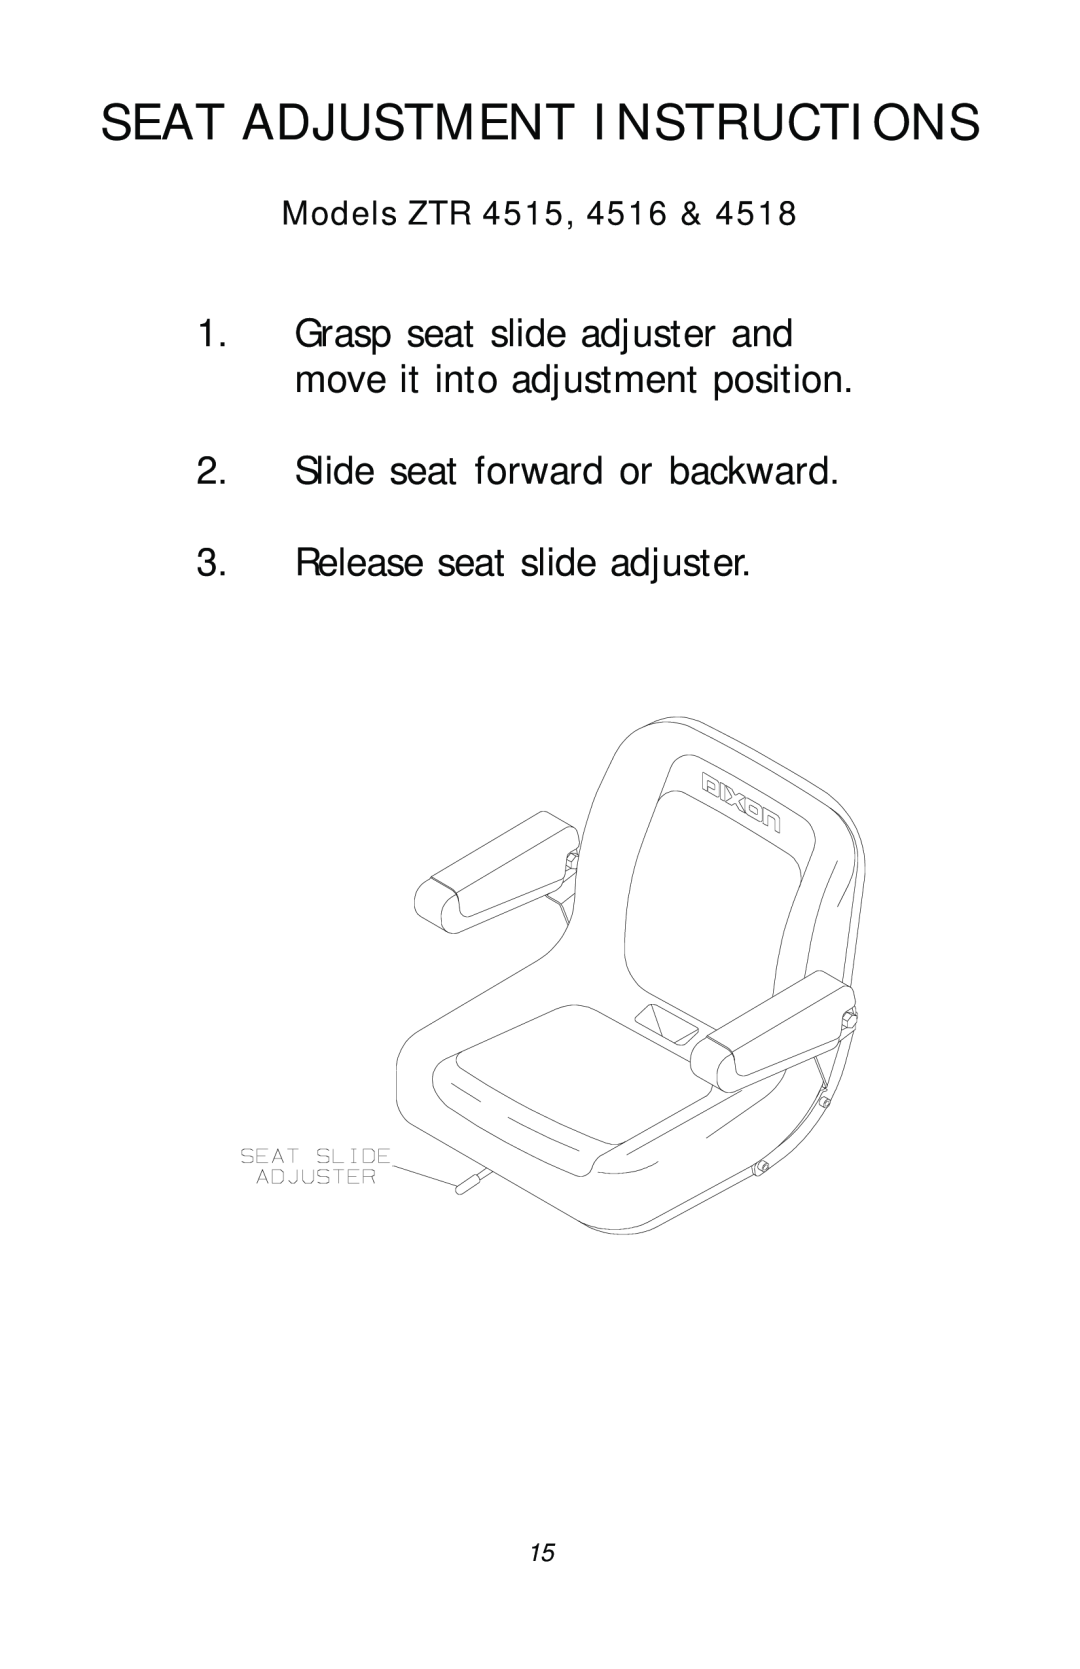 Dixon 13782-0503 Seat Adjustment Instructions, Slide seat forward or backward, Release seat slide adjuster, Models ZTR 